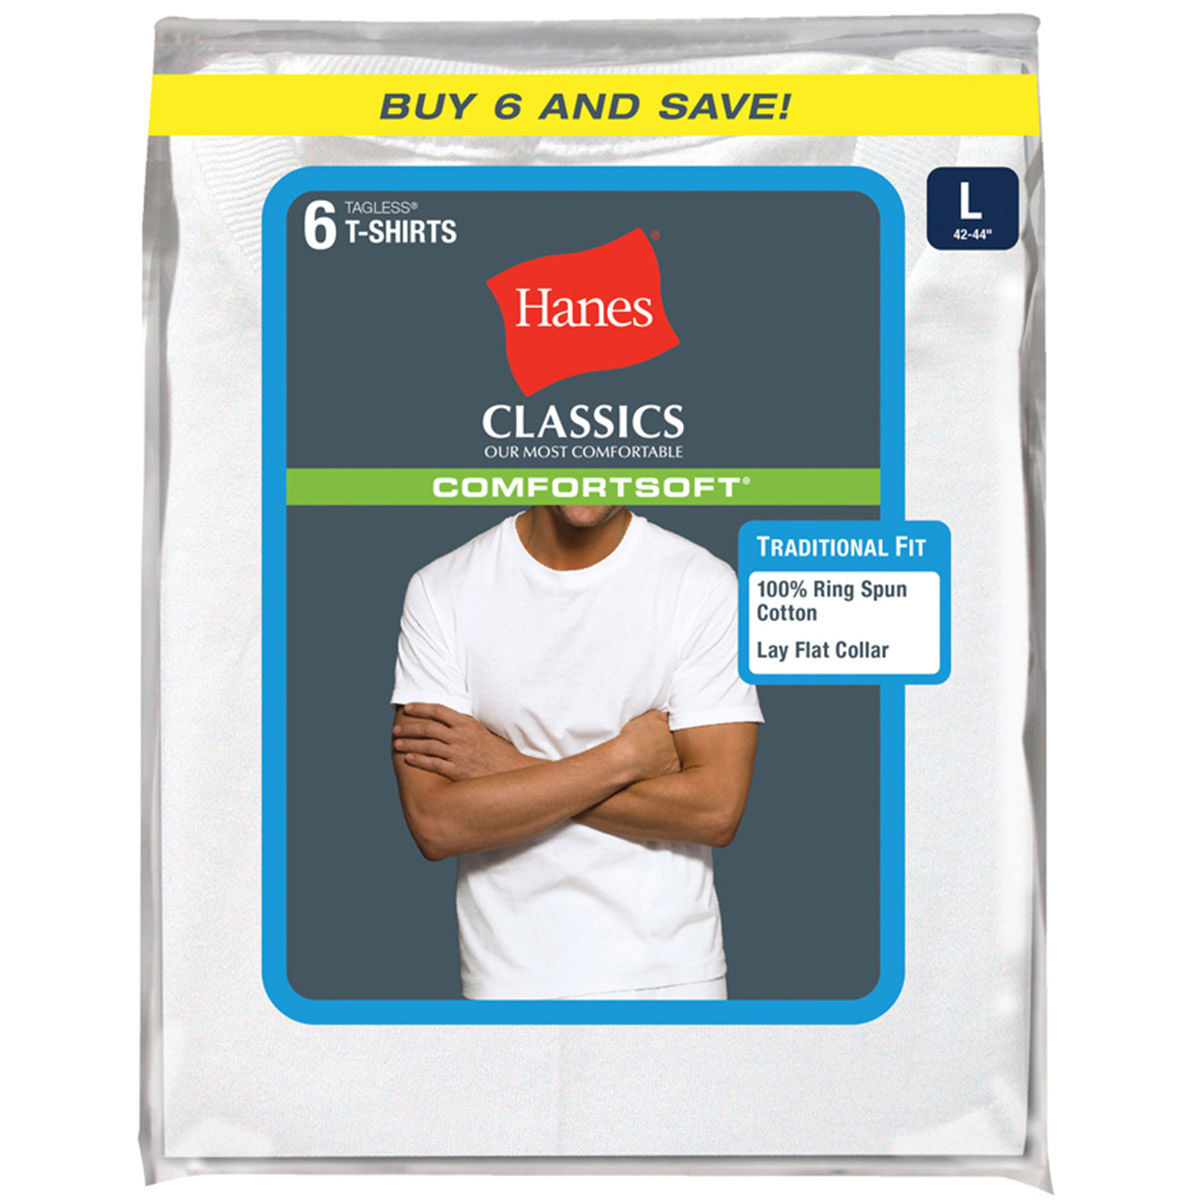 Hanes Men's Classics Comfortsoft Tagless Tees, 6-Pack